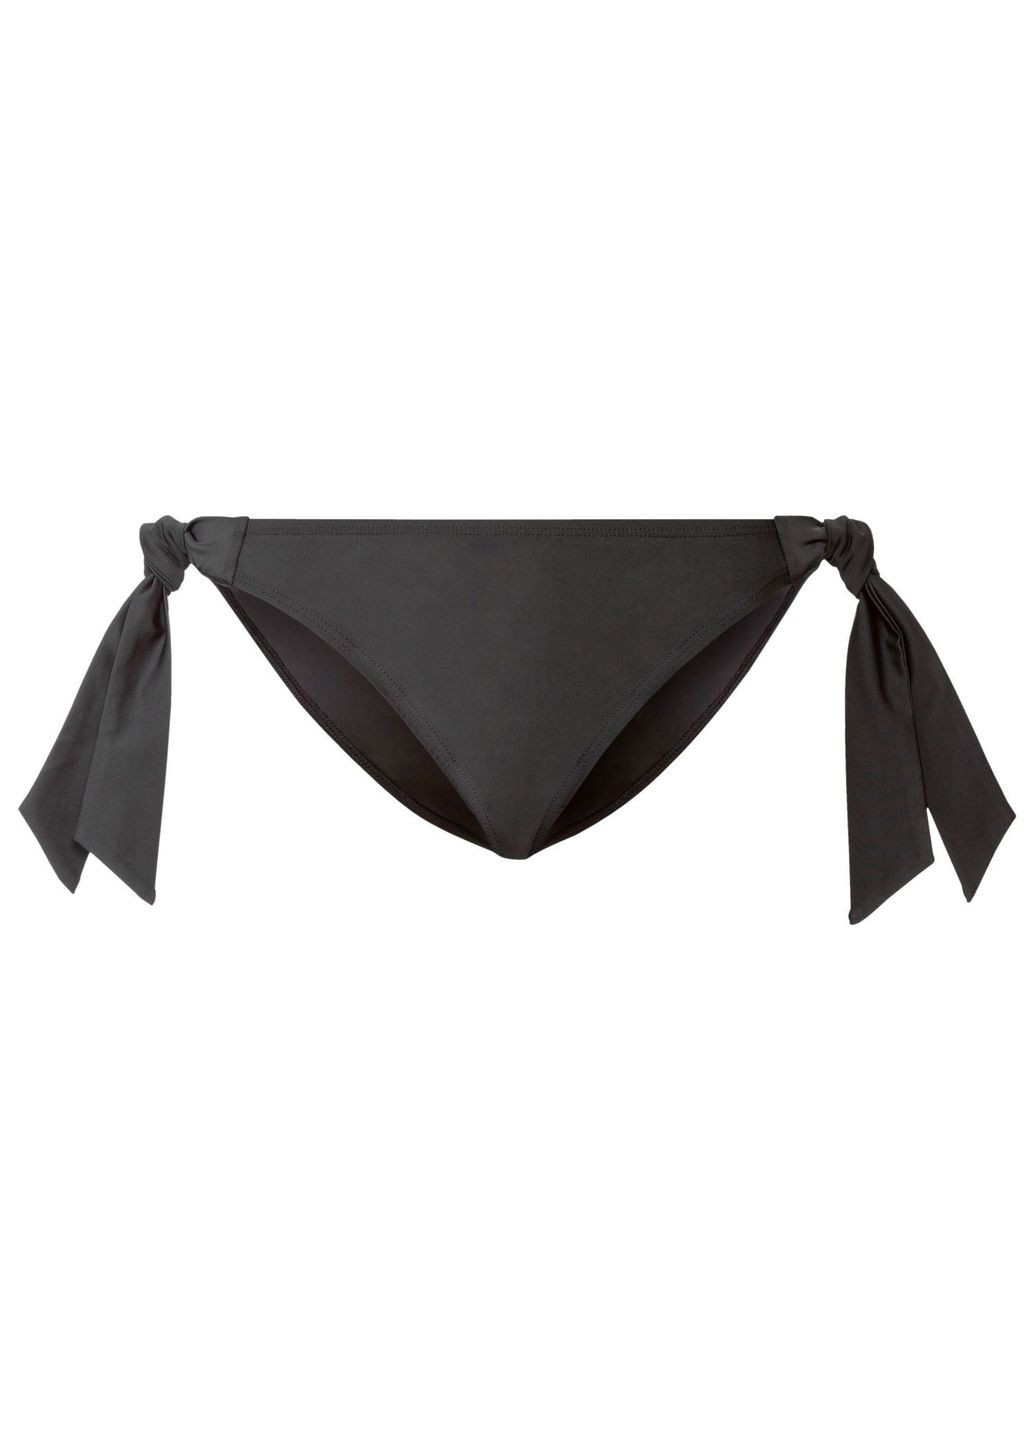 Черный купальник раздельный на подкладке для женщины lycra® 407621 Esmara